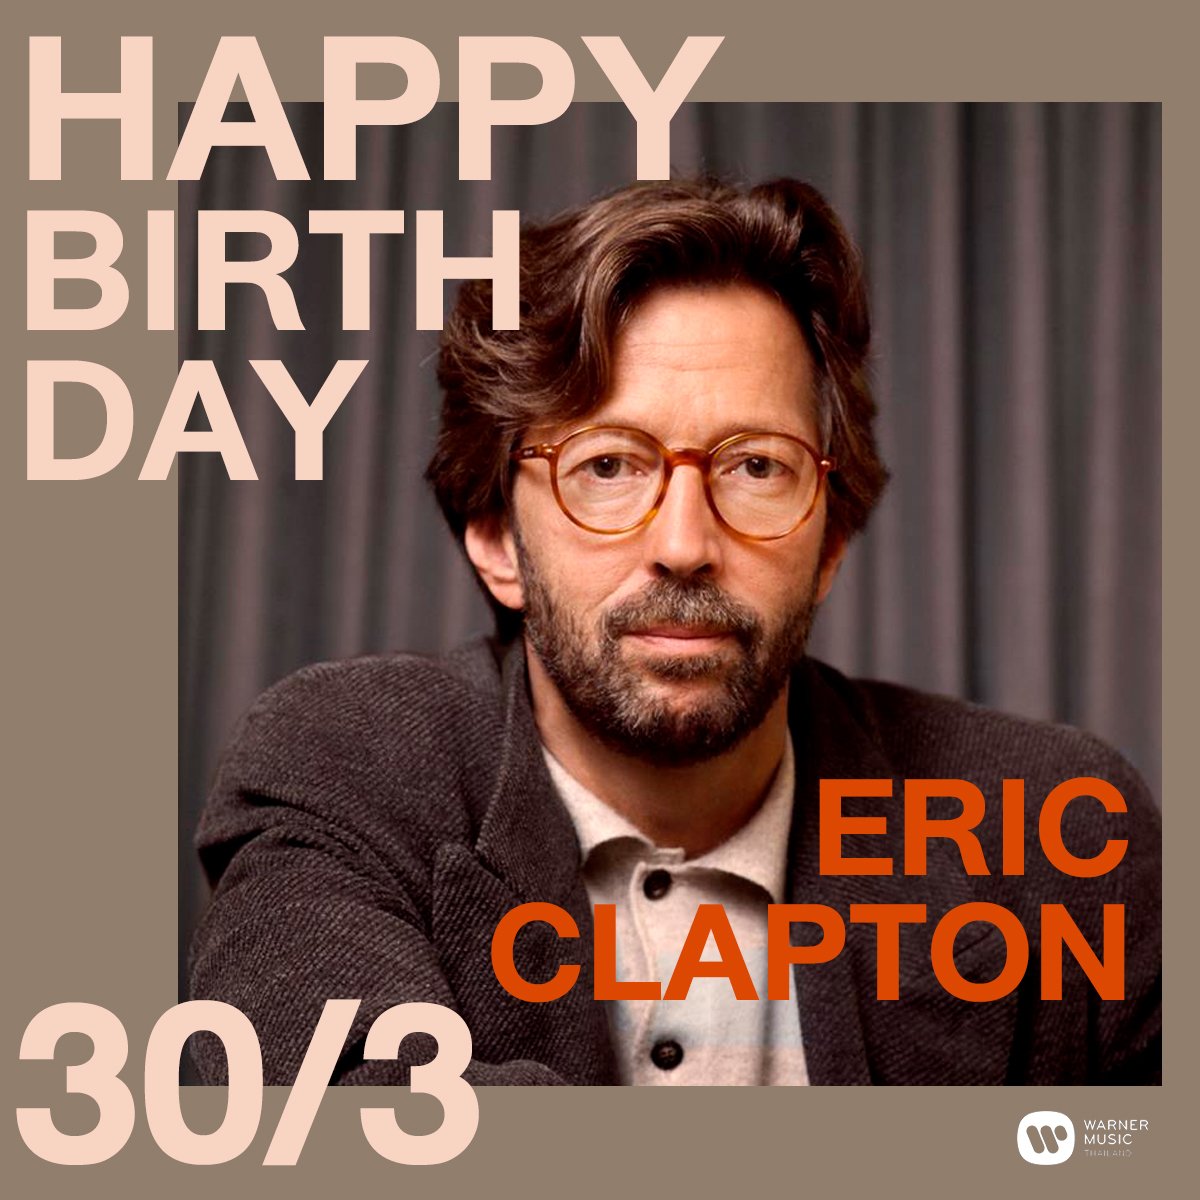   Perfect! Happy birthday, Eric Clapton  